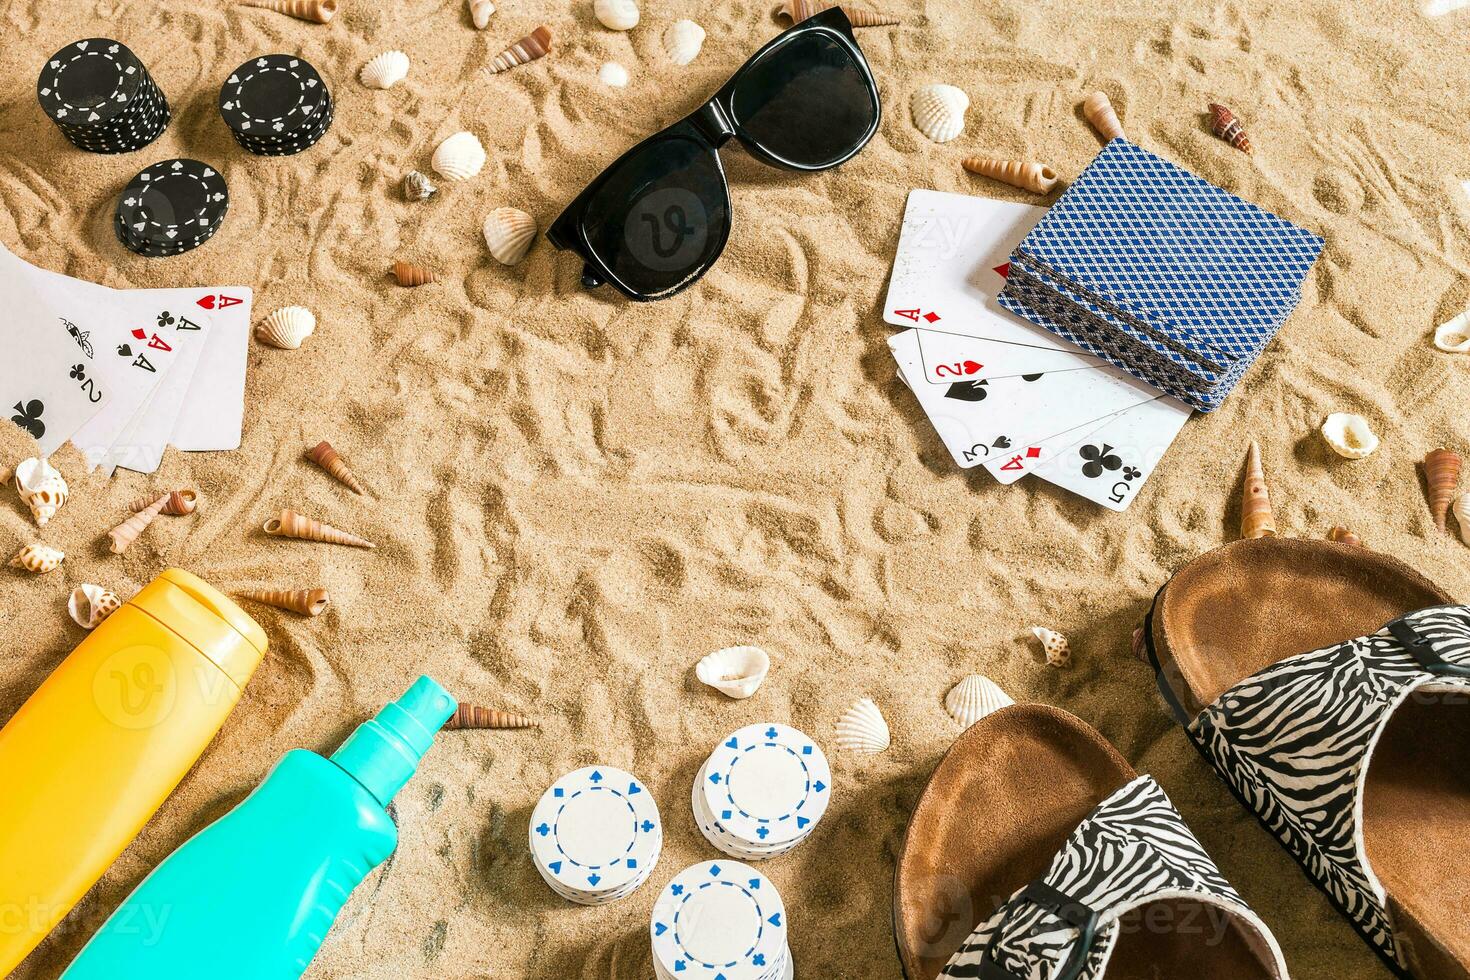 Strandpoker. Chips und Karten auf das Sand. um das Muscheln, Sonnenbrille und Flip Flops. oben Aussicht foto